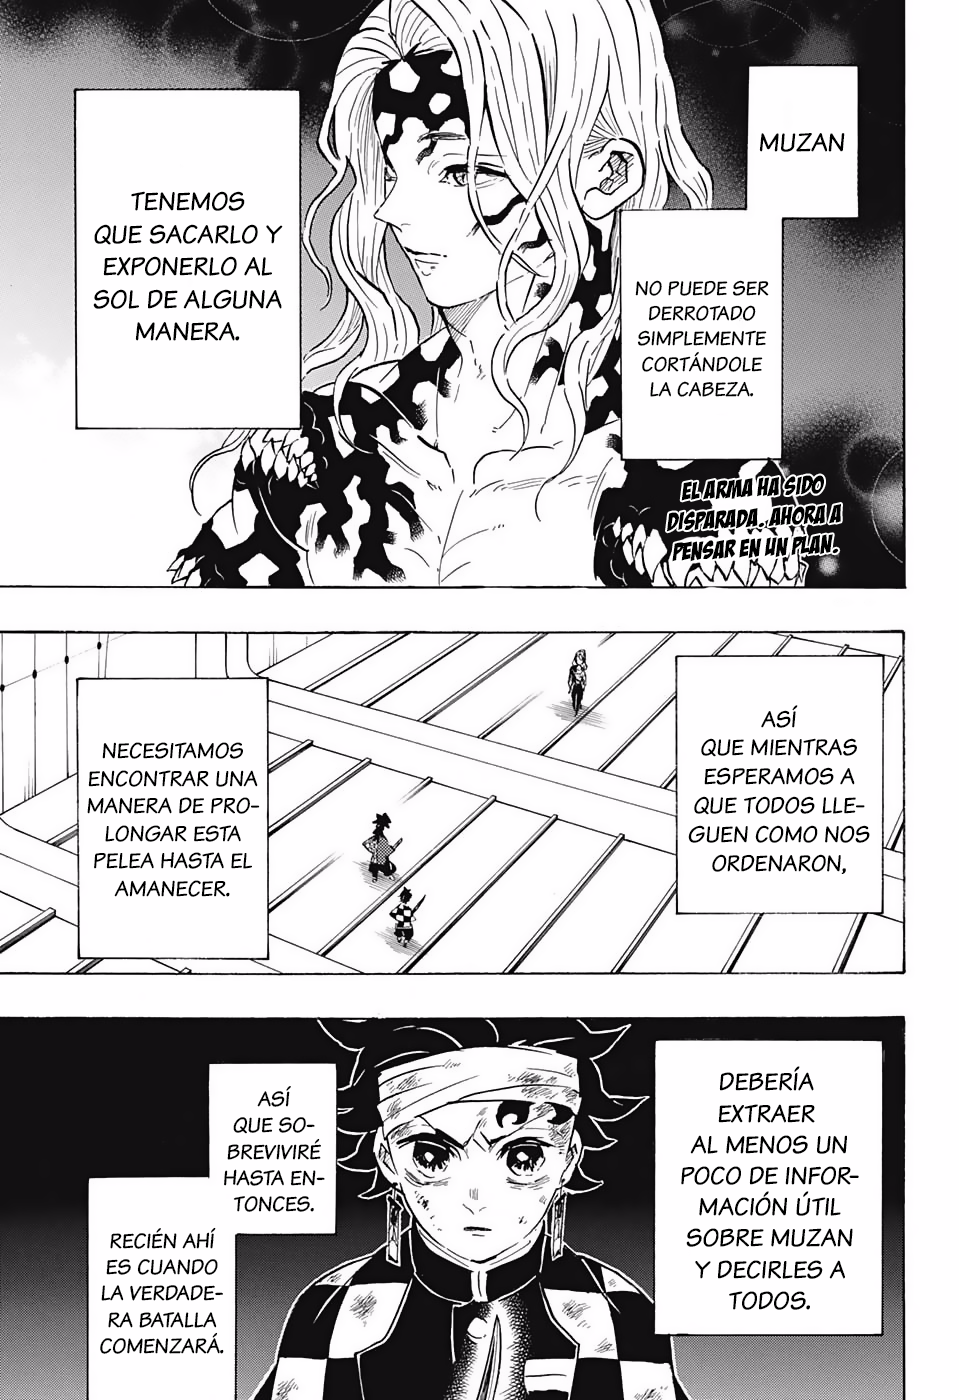 Manga Kimetsu No Yaiba Capitulo 182 Espanol Sub Archives Kimetsu No Yaiba Spanish Manga En Linea